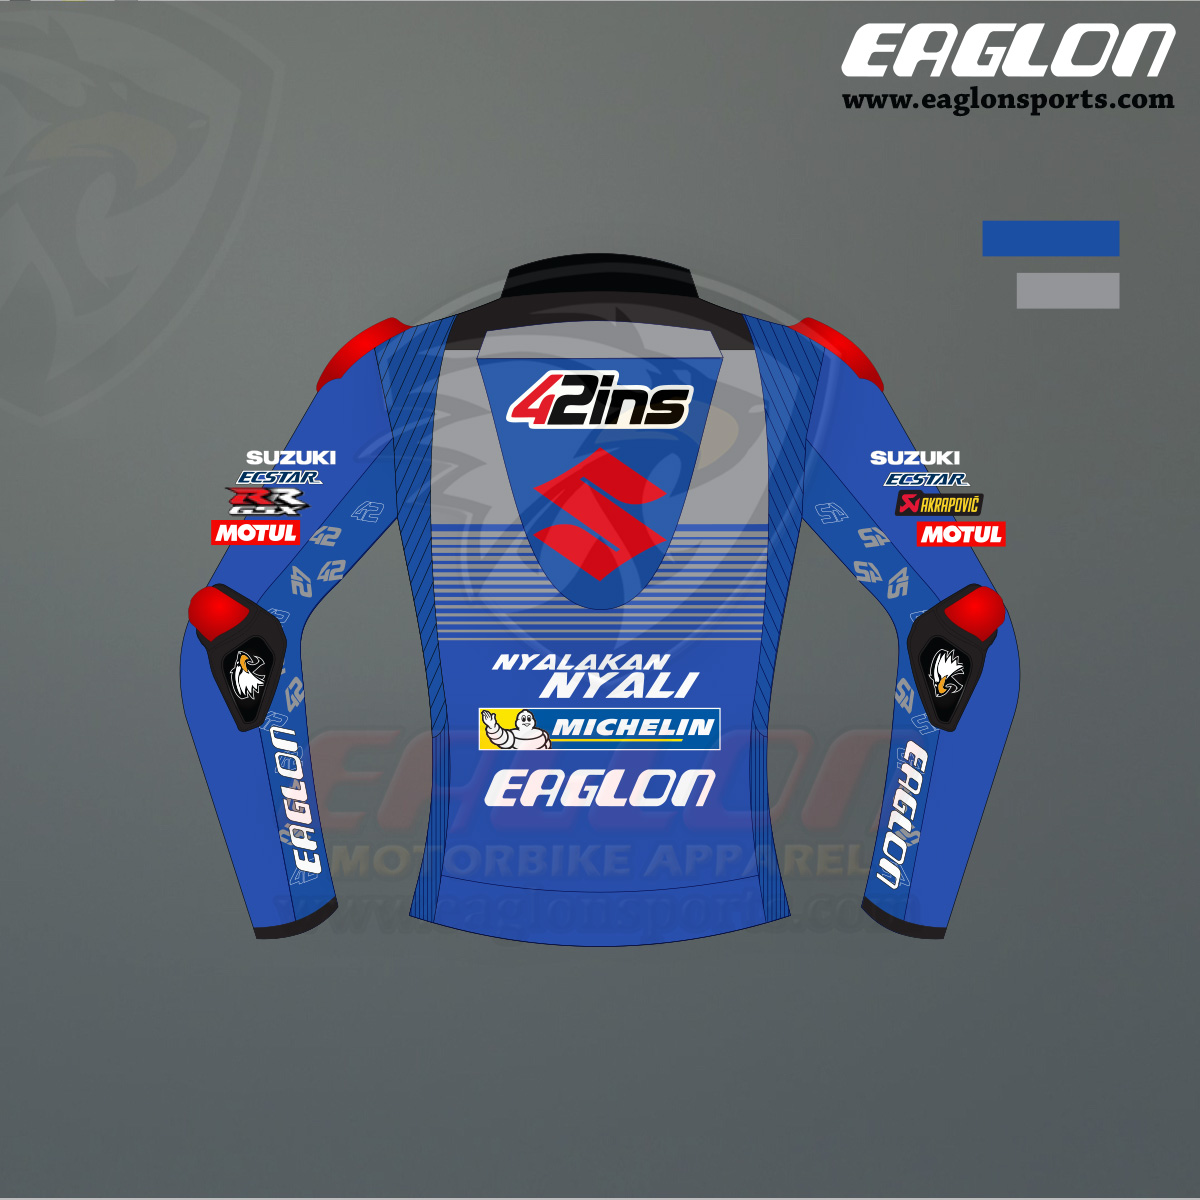 Alex Rins Suzuki Ecstar MotoGP 2020 Leather Jacket